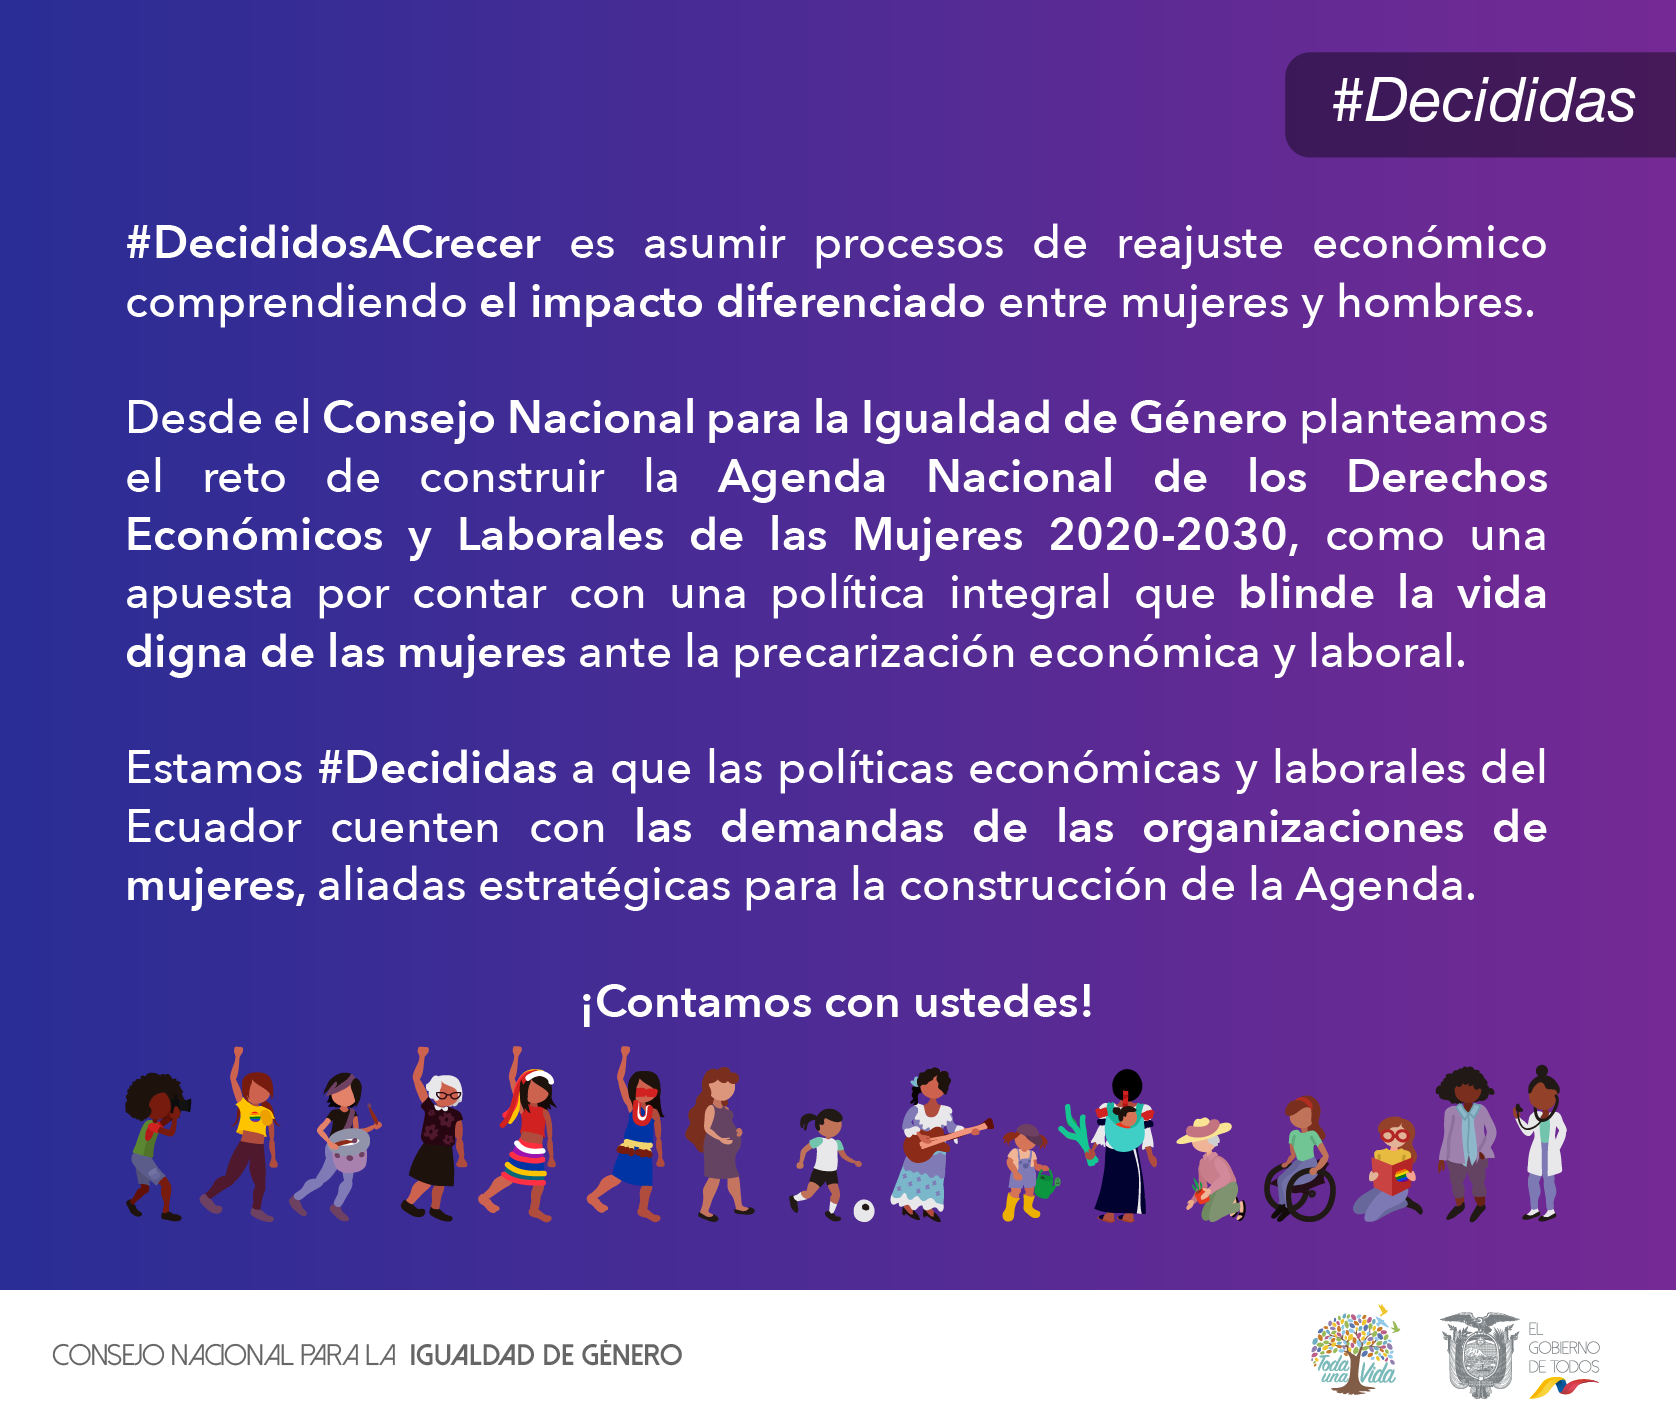 Estamos #Decididas a que las políticas económicas y laborales del Ecuador cuenten con las demandas de las organizaciones de mujeres.